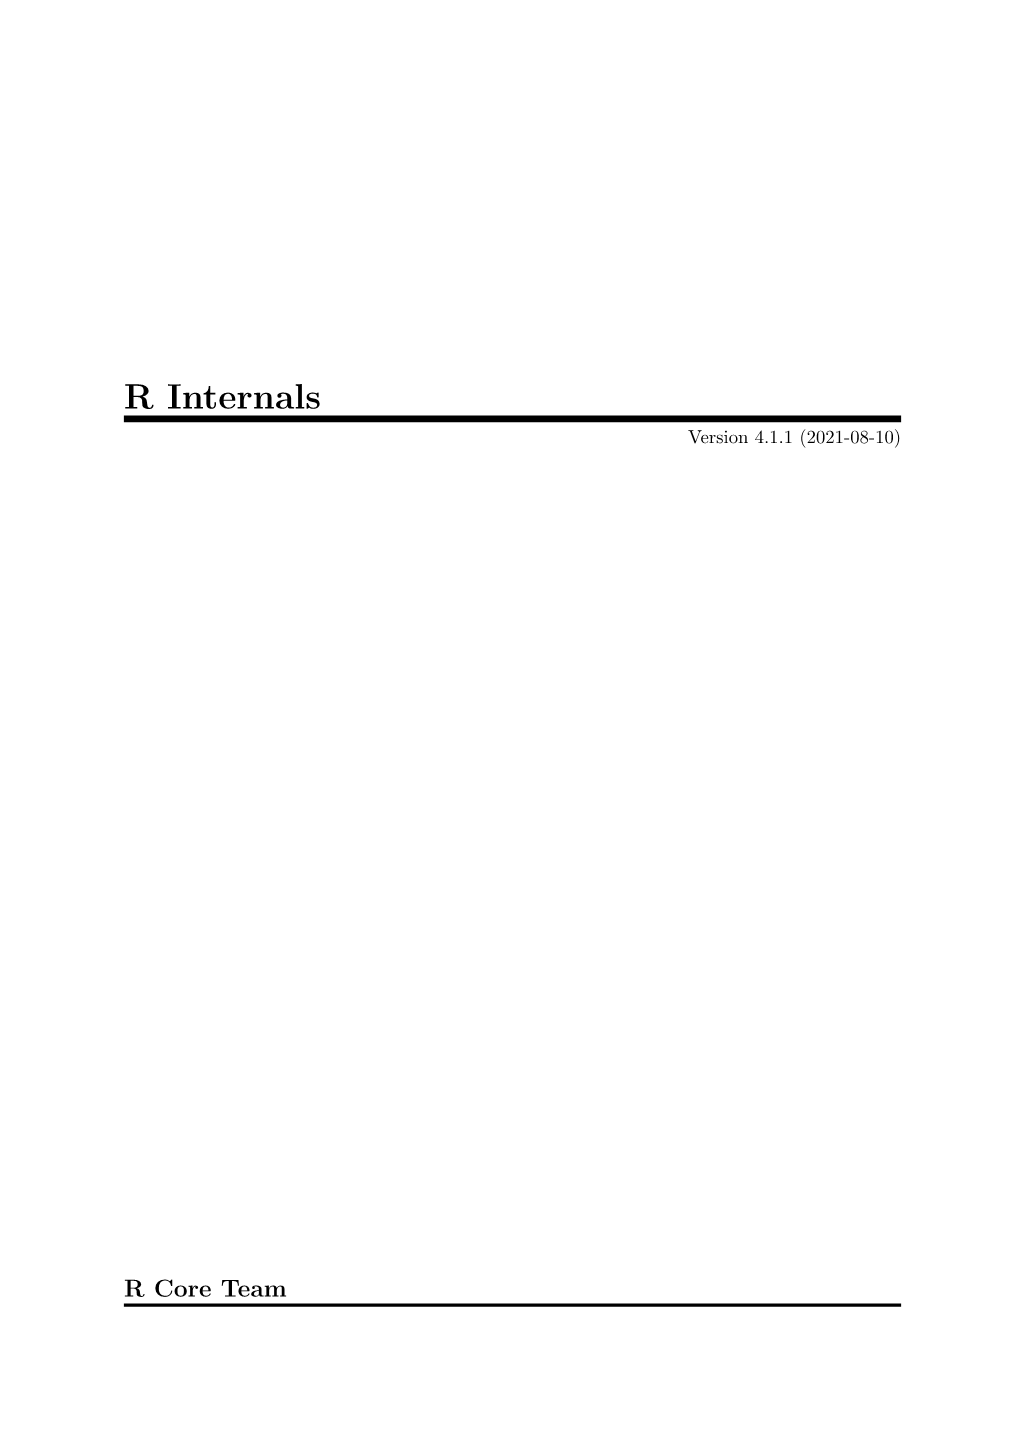 R Internals Version 4.1.1 (2021-08-10)